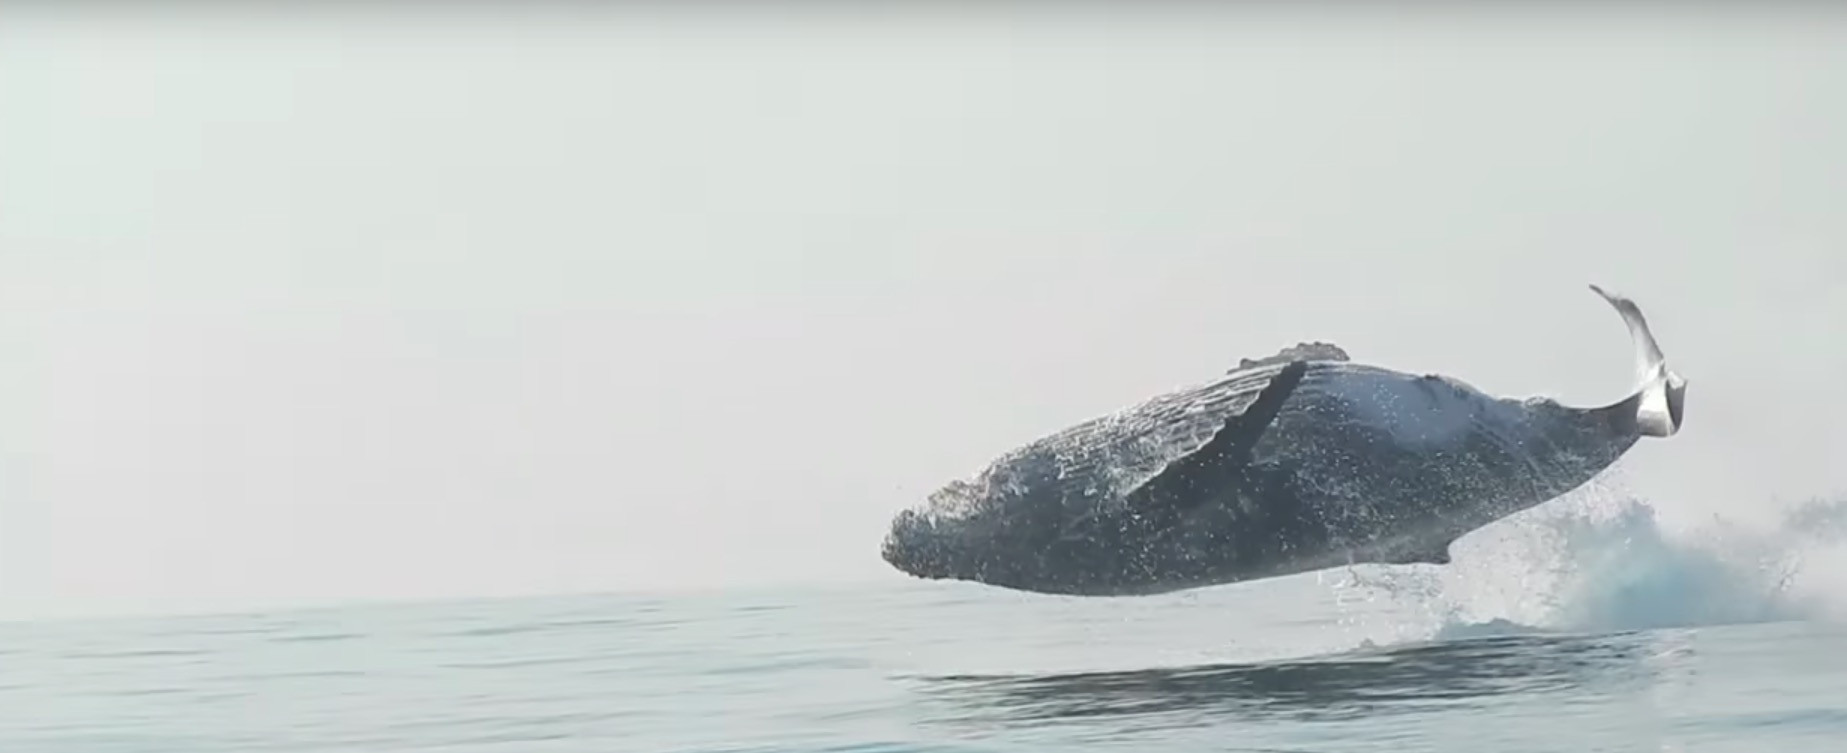 Σπάνια λήψη άλματος φάλαινας δεκάδων τόνων στο φυσικό της περιβάλλον [Βίντεο]